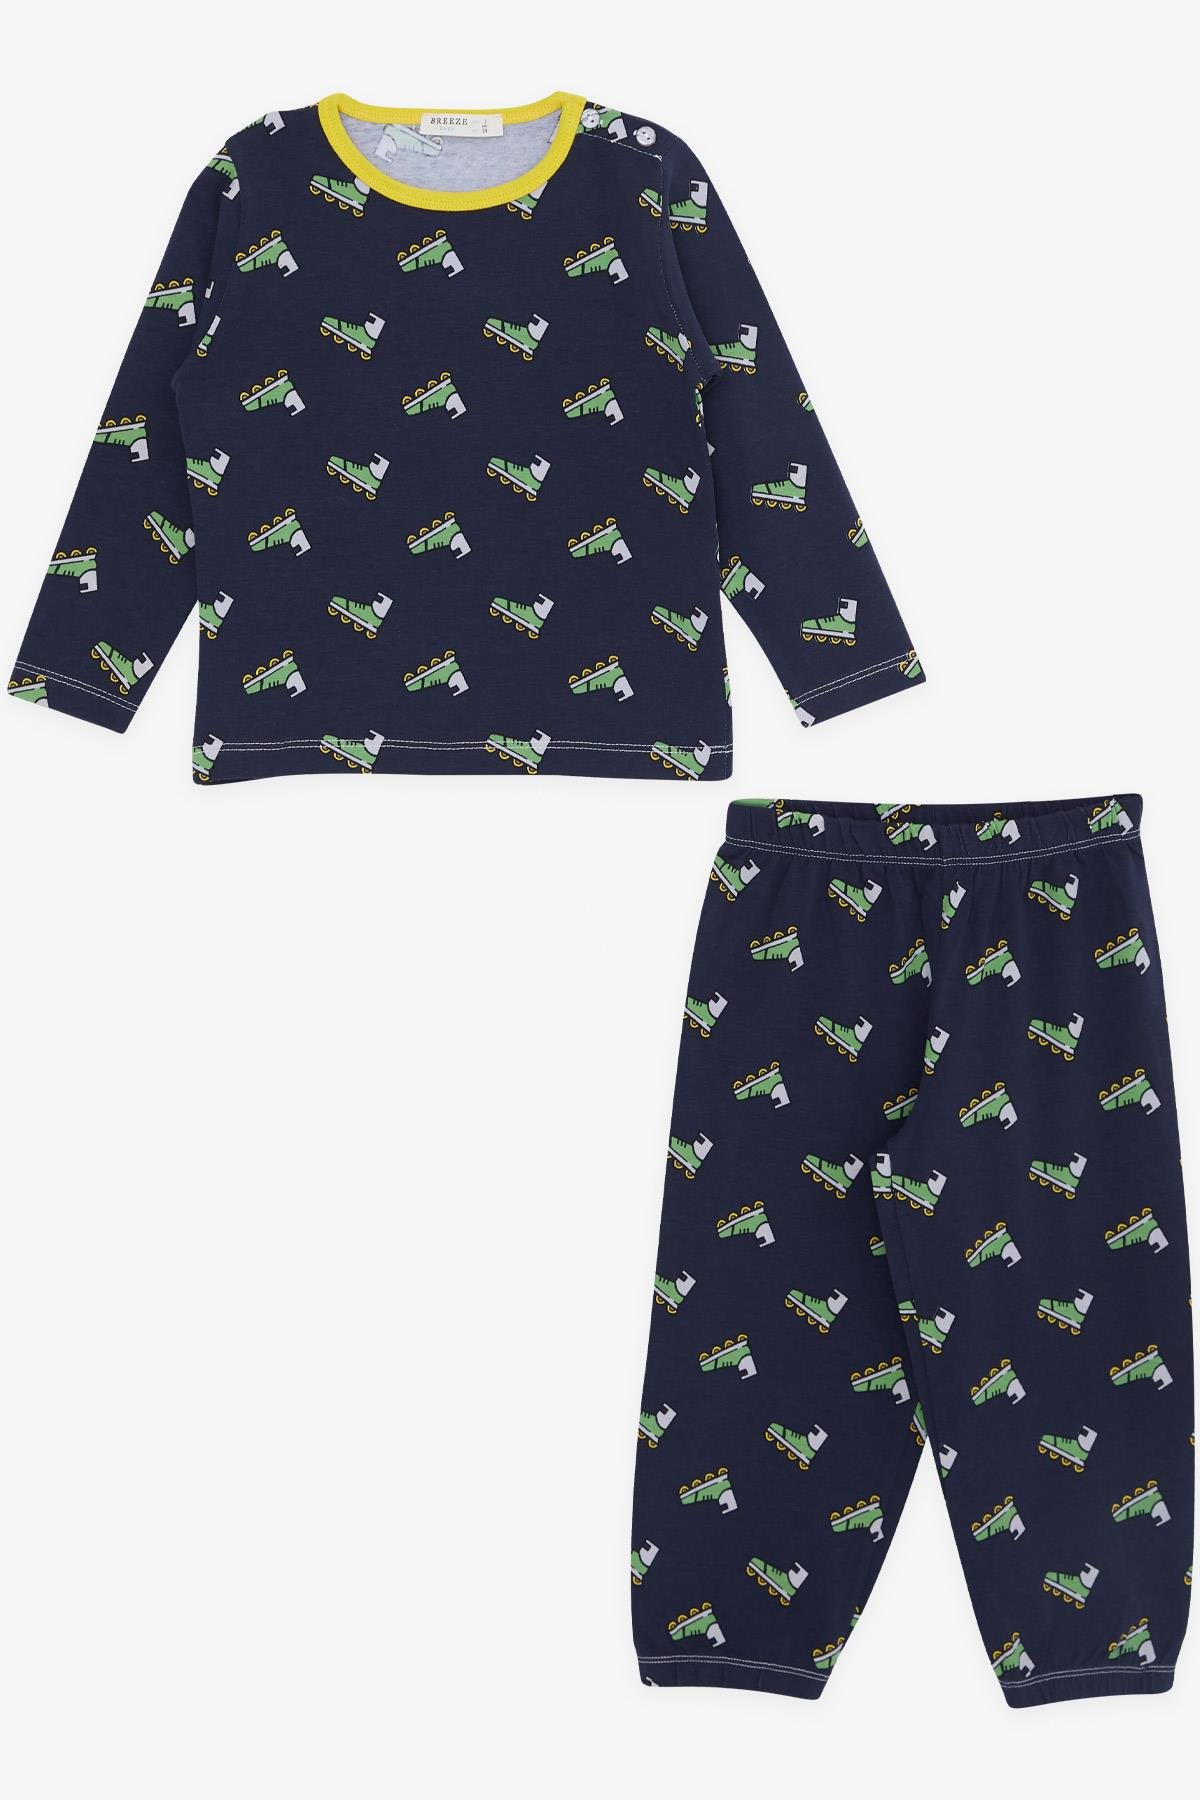 Erkek Bebek Pijama Takımı Paten Desenli Lacivert 9 Ay-3 Yaş - Yumuşak  Kumaşlı Çocuk Pijamaları | Breeze